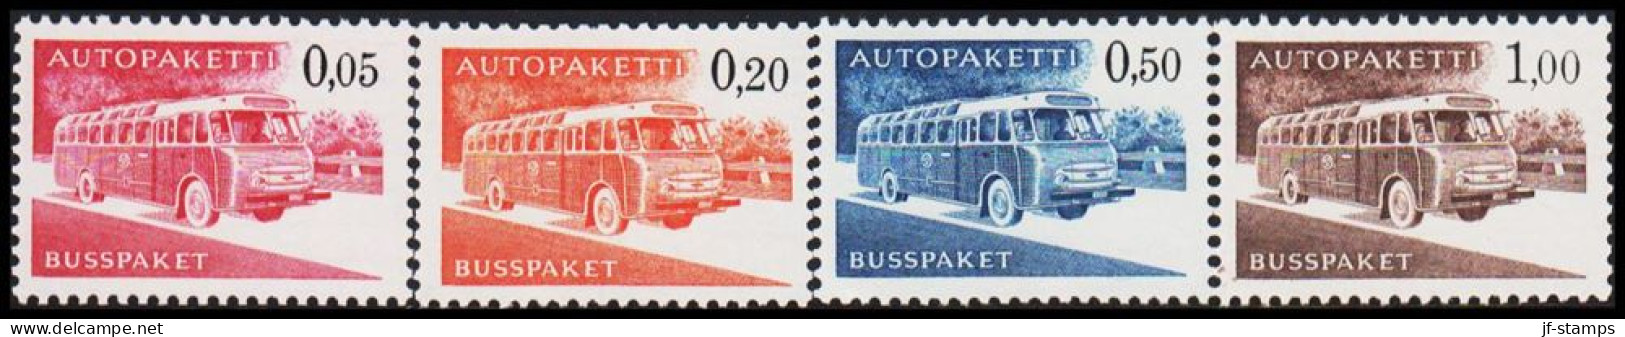 1963-1980. FINLAND. Mail Bus. Complete Set AUTOPAKETTI - BUSSPAKET Never Hinged. Normal... (Michel AP 10-13x) - JF535608 - Colis Par Autobus